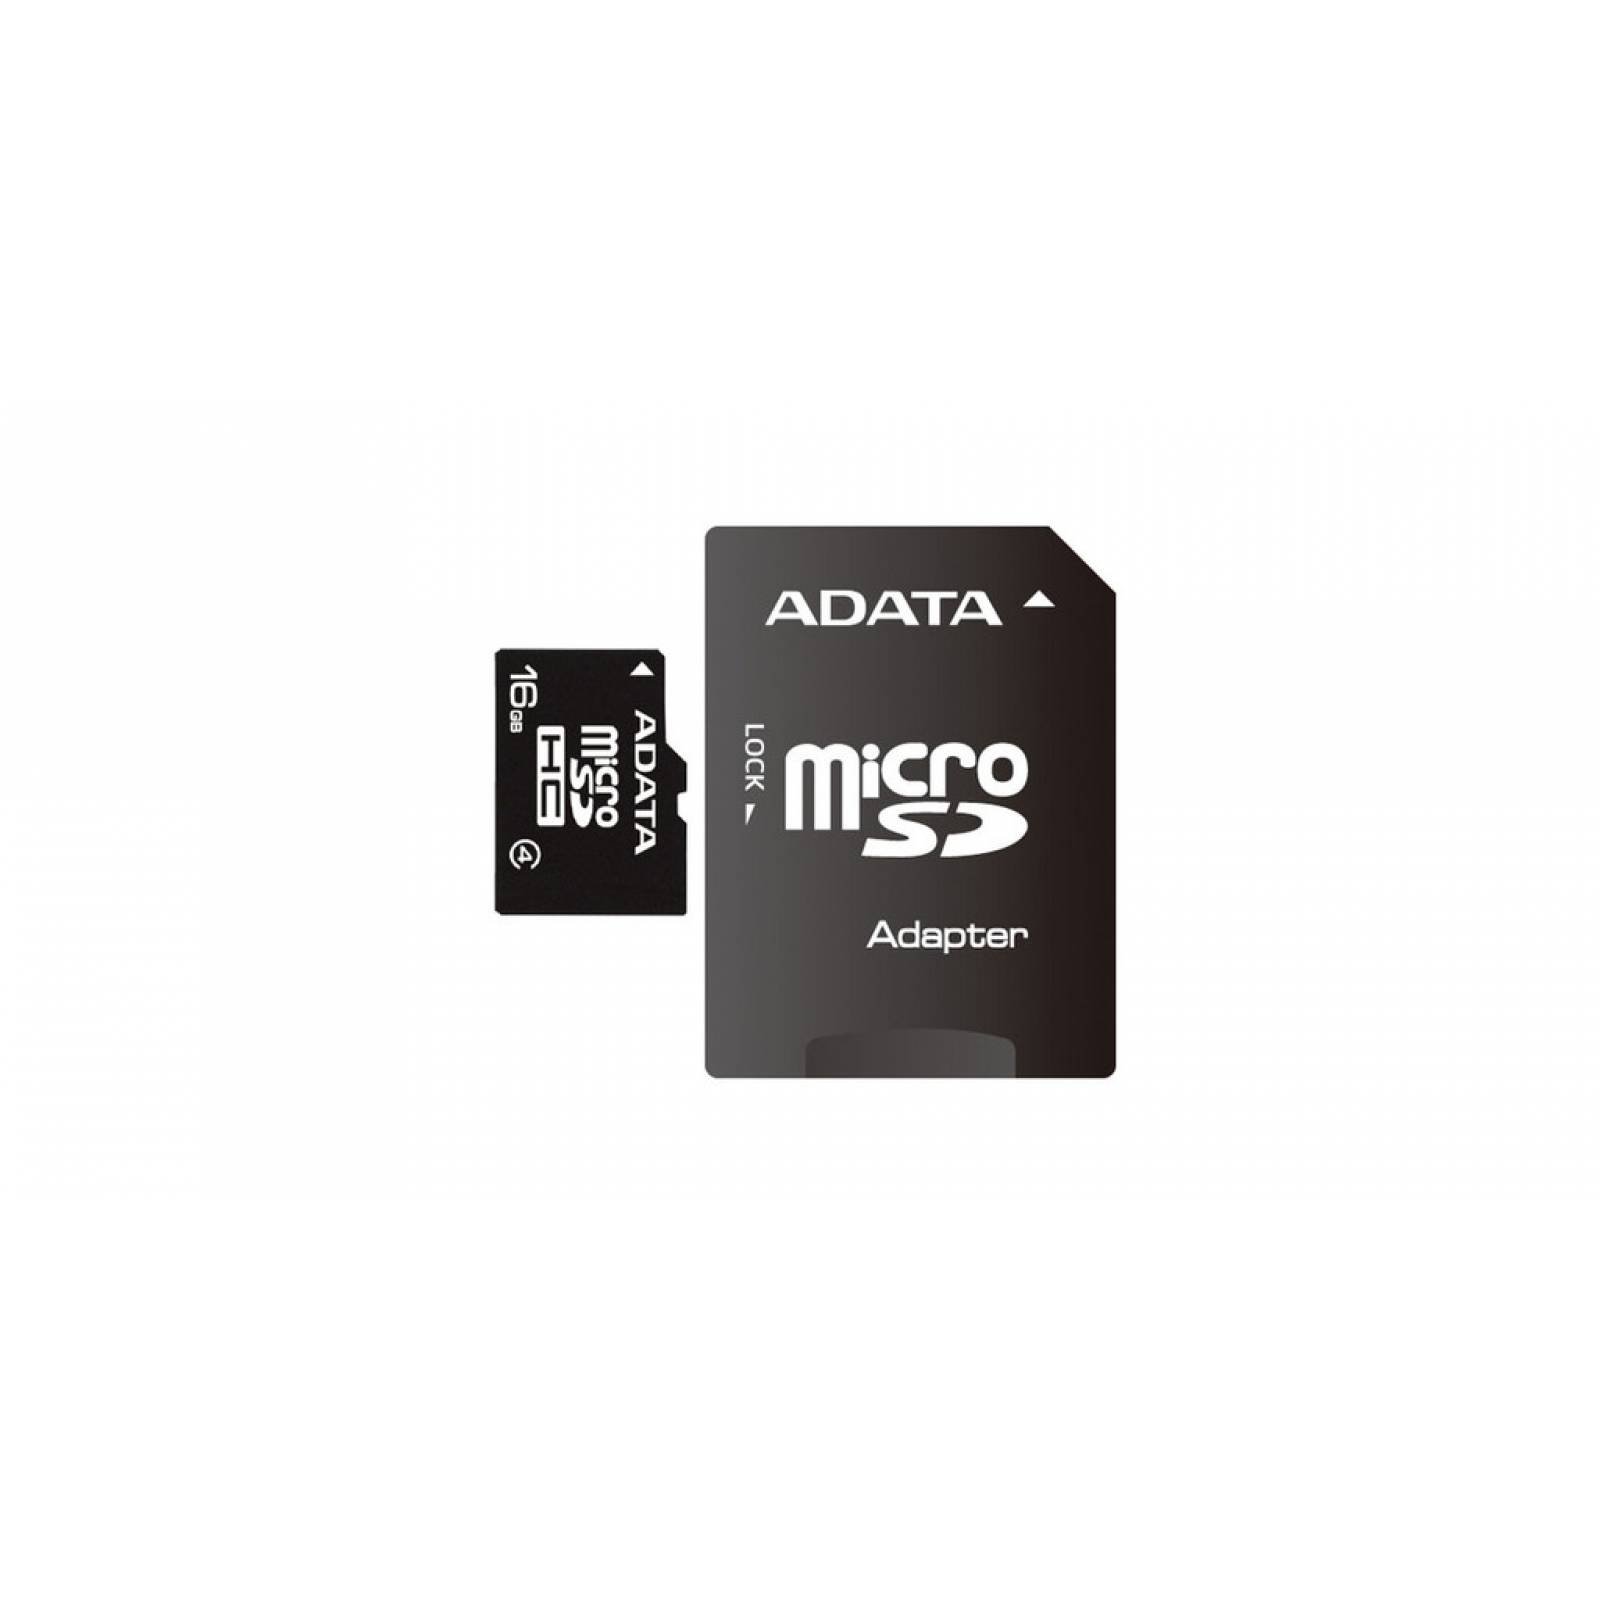 Memoria Flash MicroSDHC Adata 16GB Clase 4 Adaptador Celular